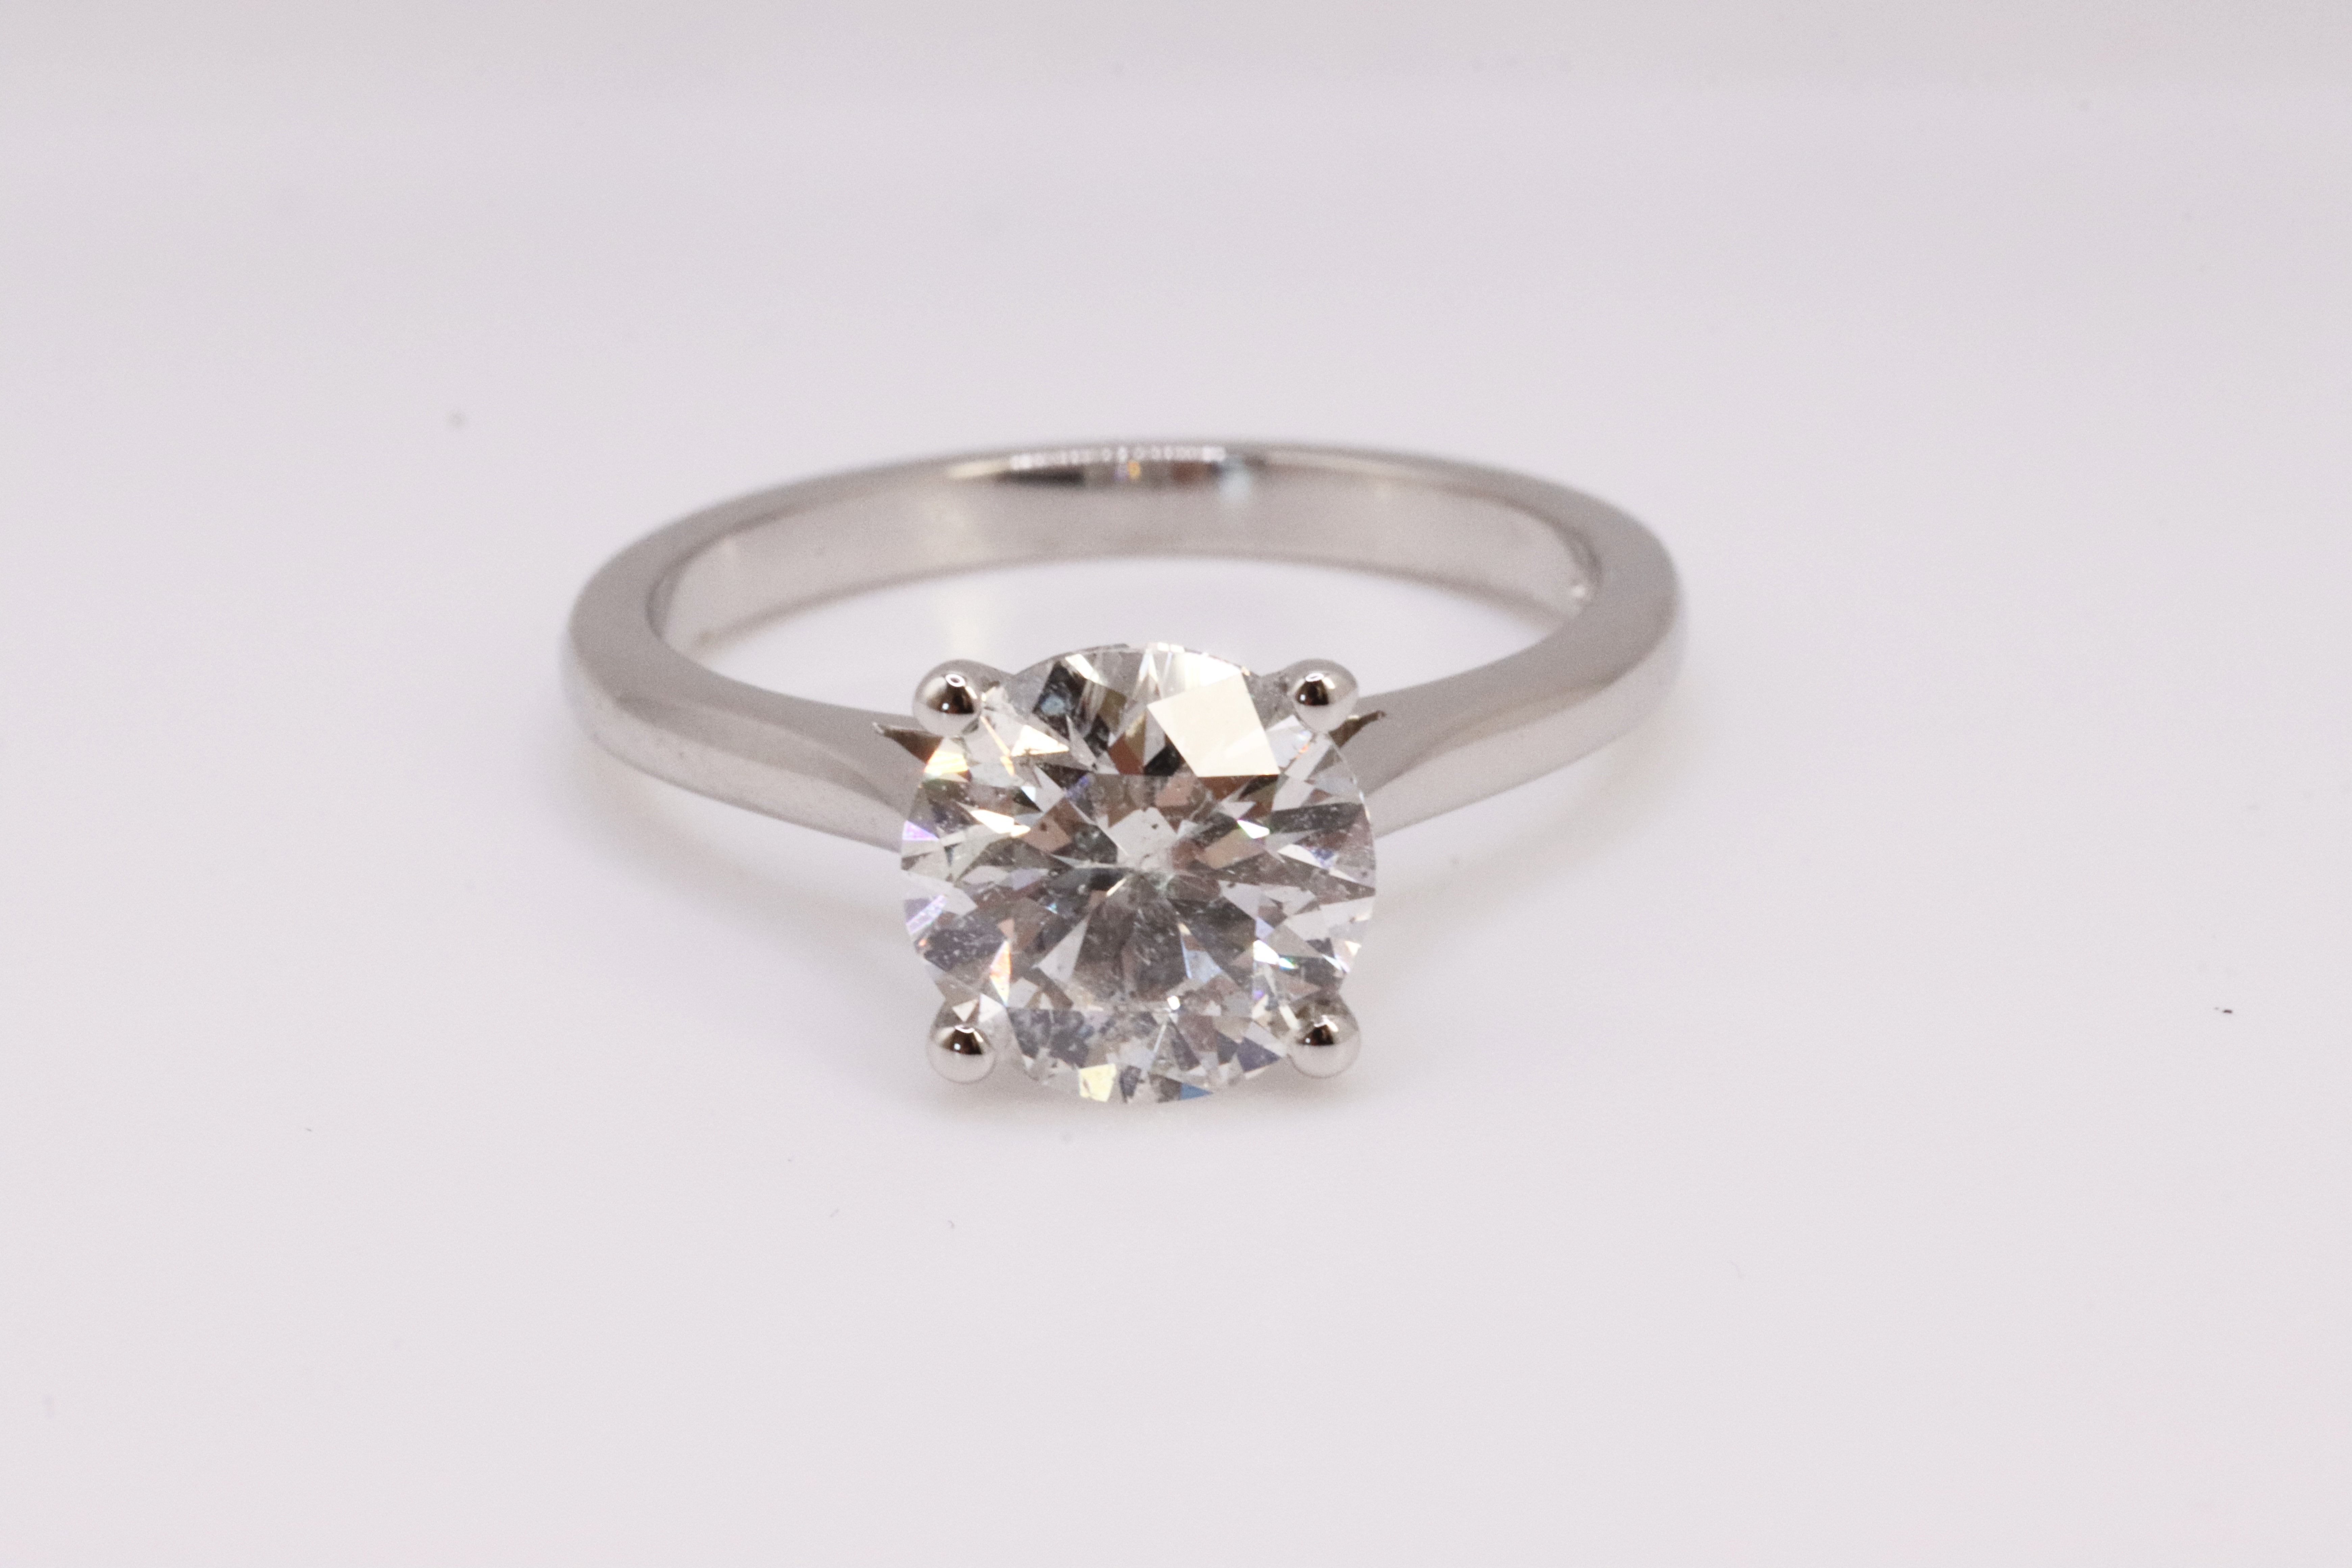 ** ON SALE ** Round Brilliant Cut Natural Diamond 2.00 Carat Colour D Clarity VS2 Platinum Ring- DGI - Image 2 of 8